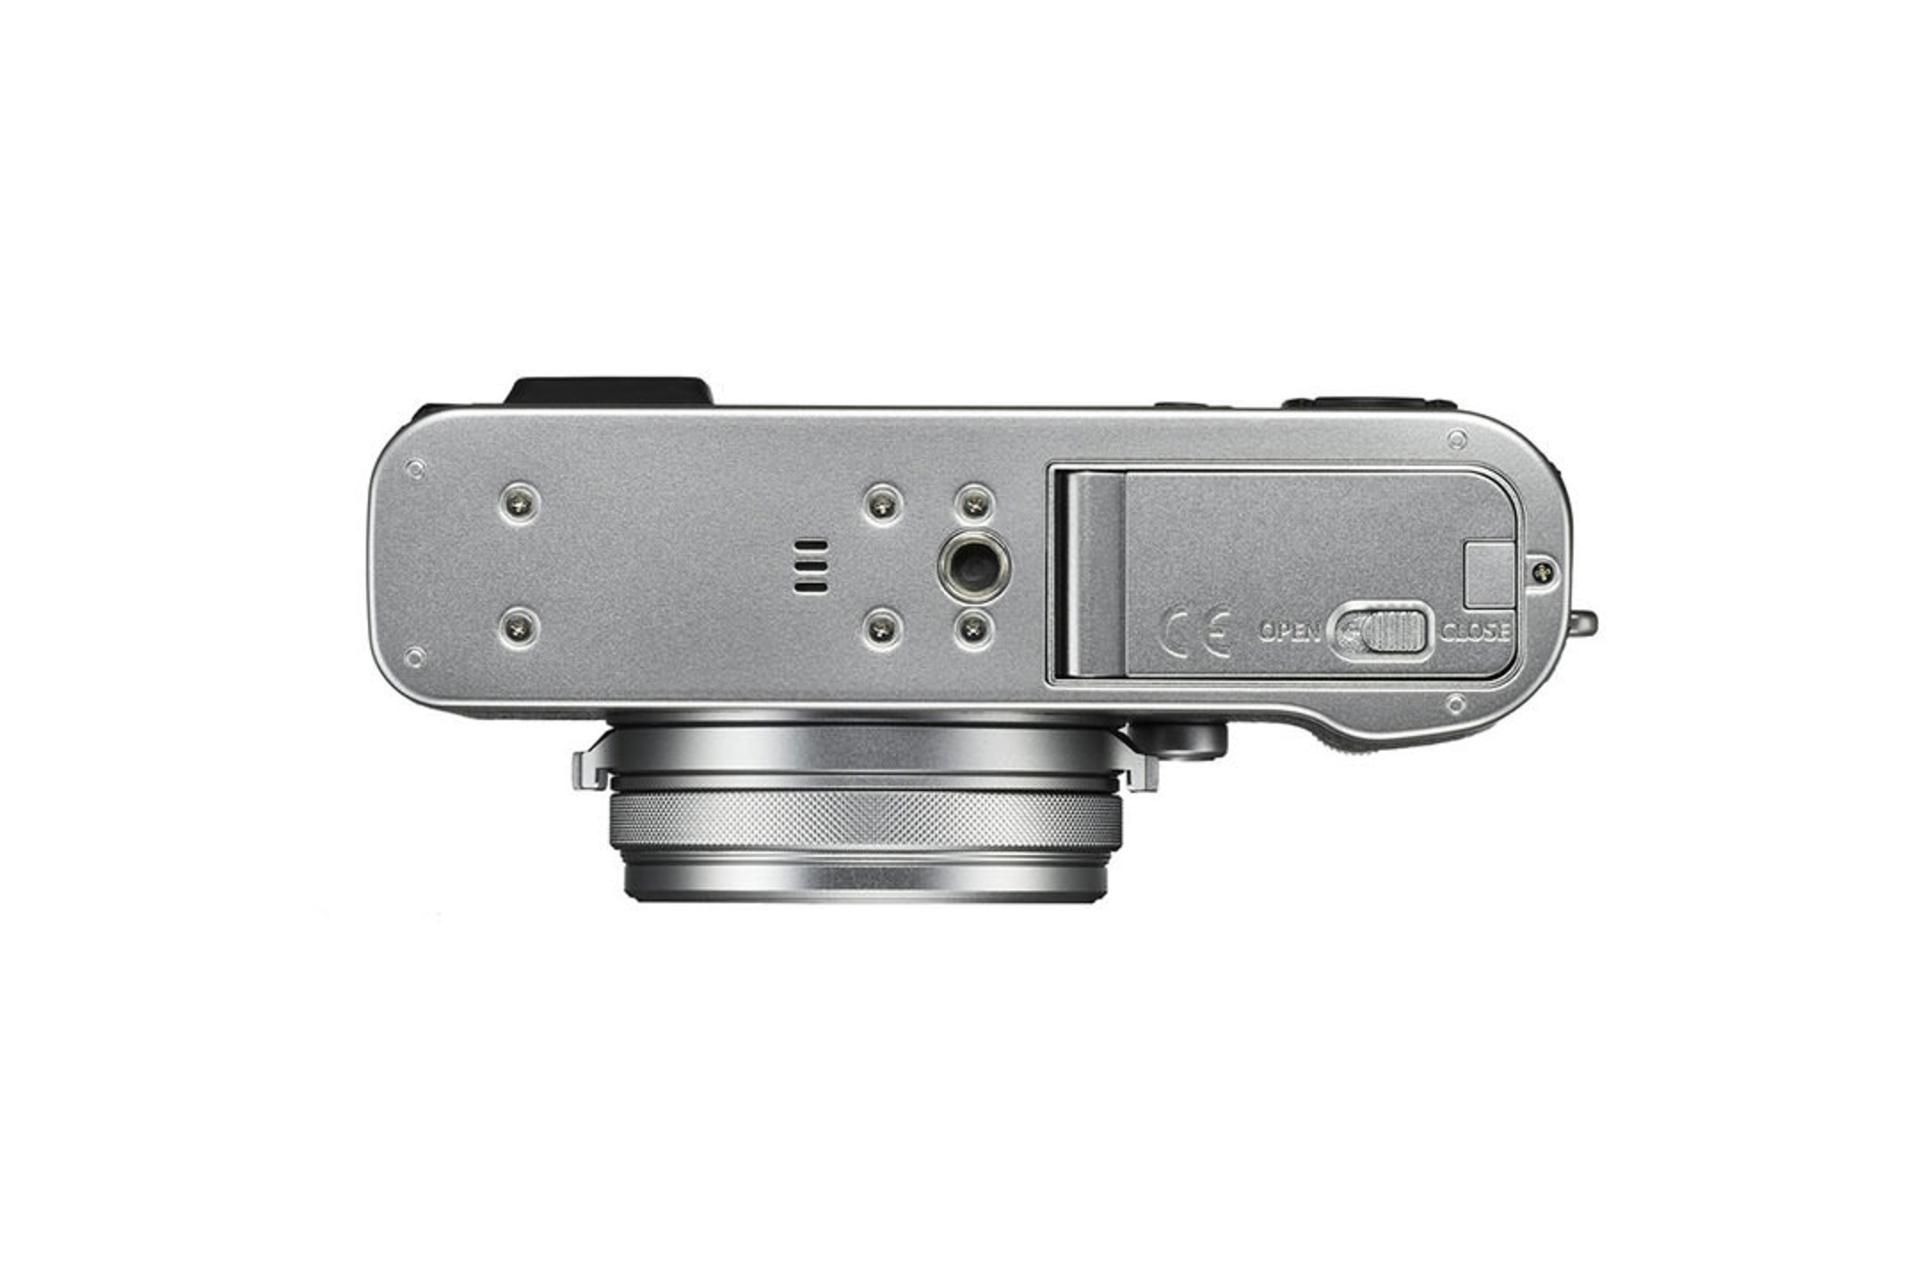 Fujifilm X100F	